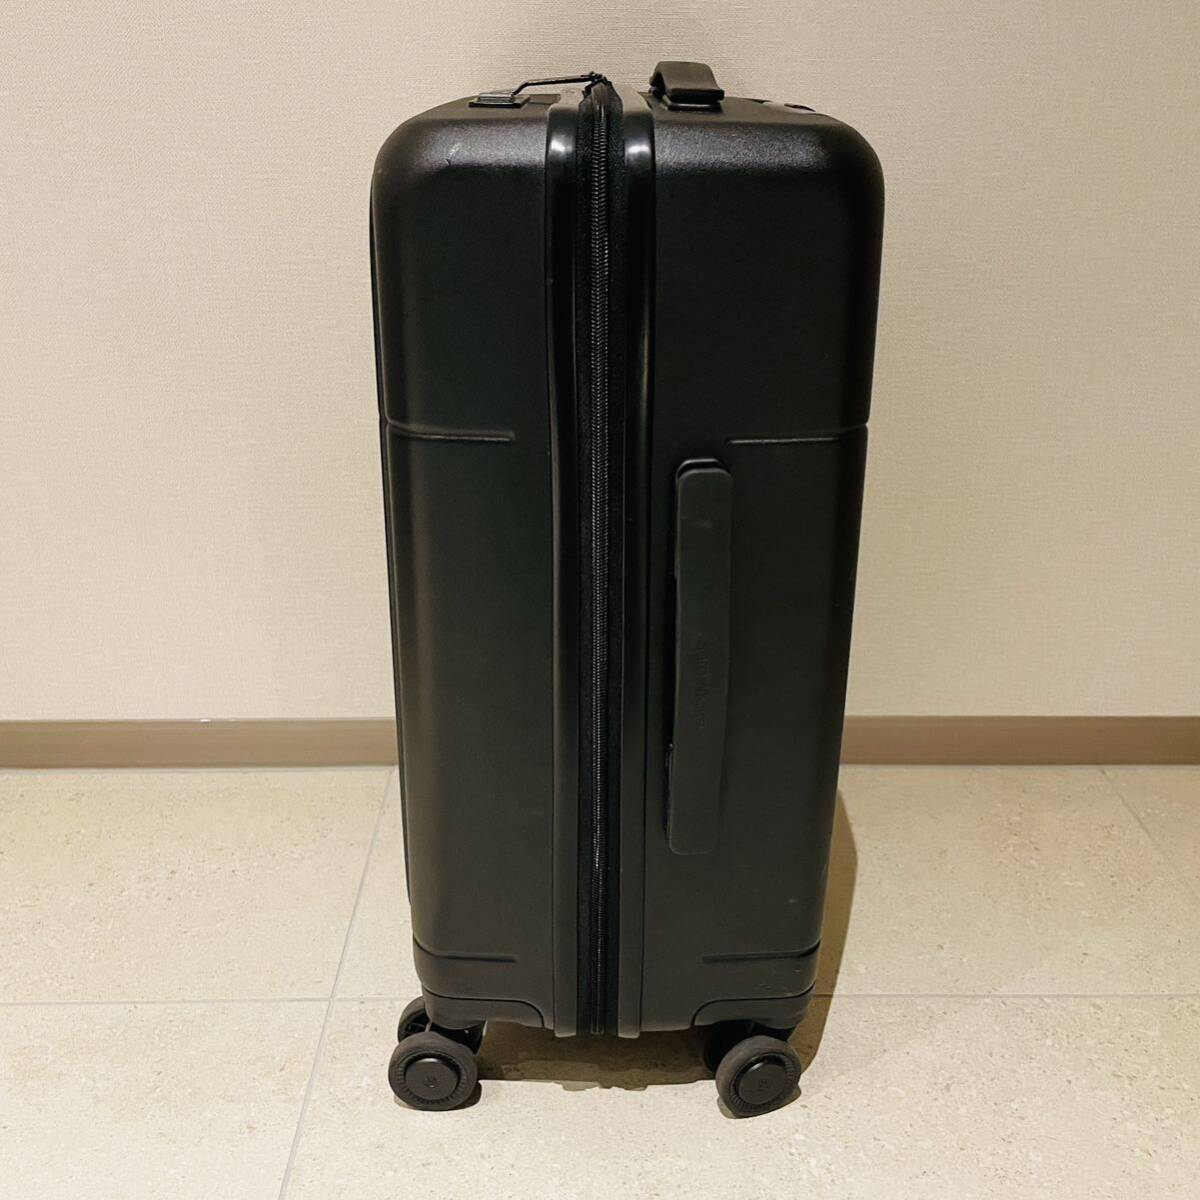 Samsonite Samsonite suitcase Carry case machine inside bringing in black 